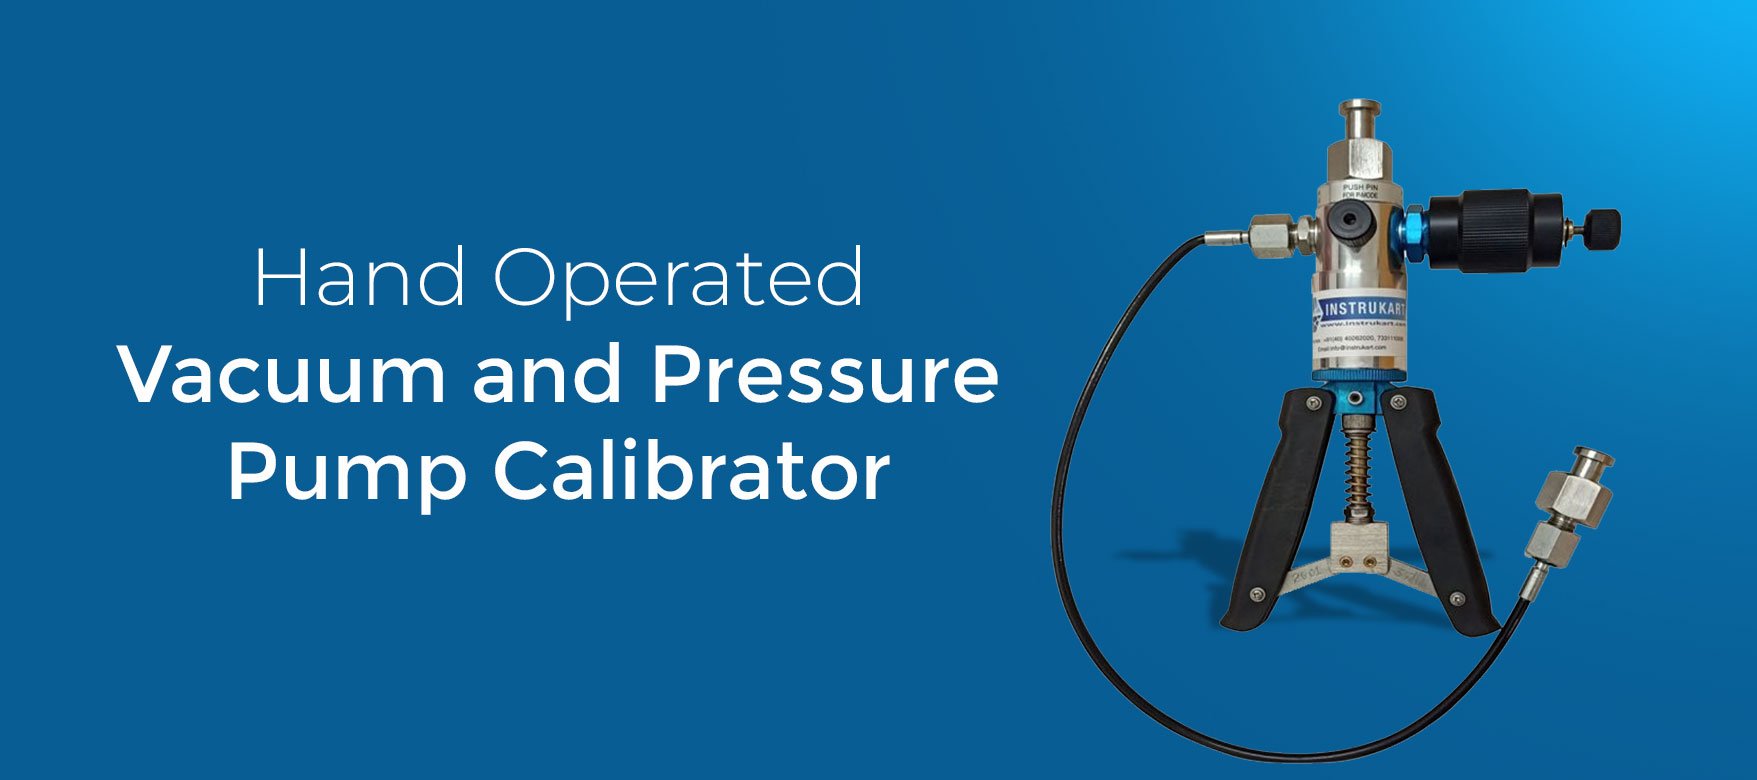 Hand Operated Vacuum and Pressure Pump Calibrator